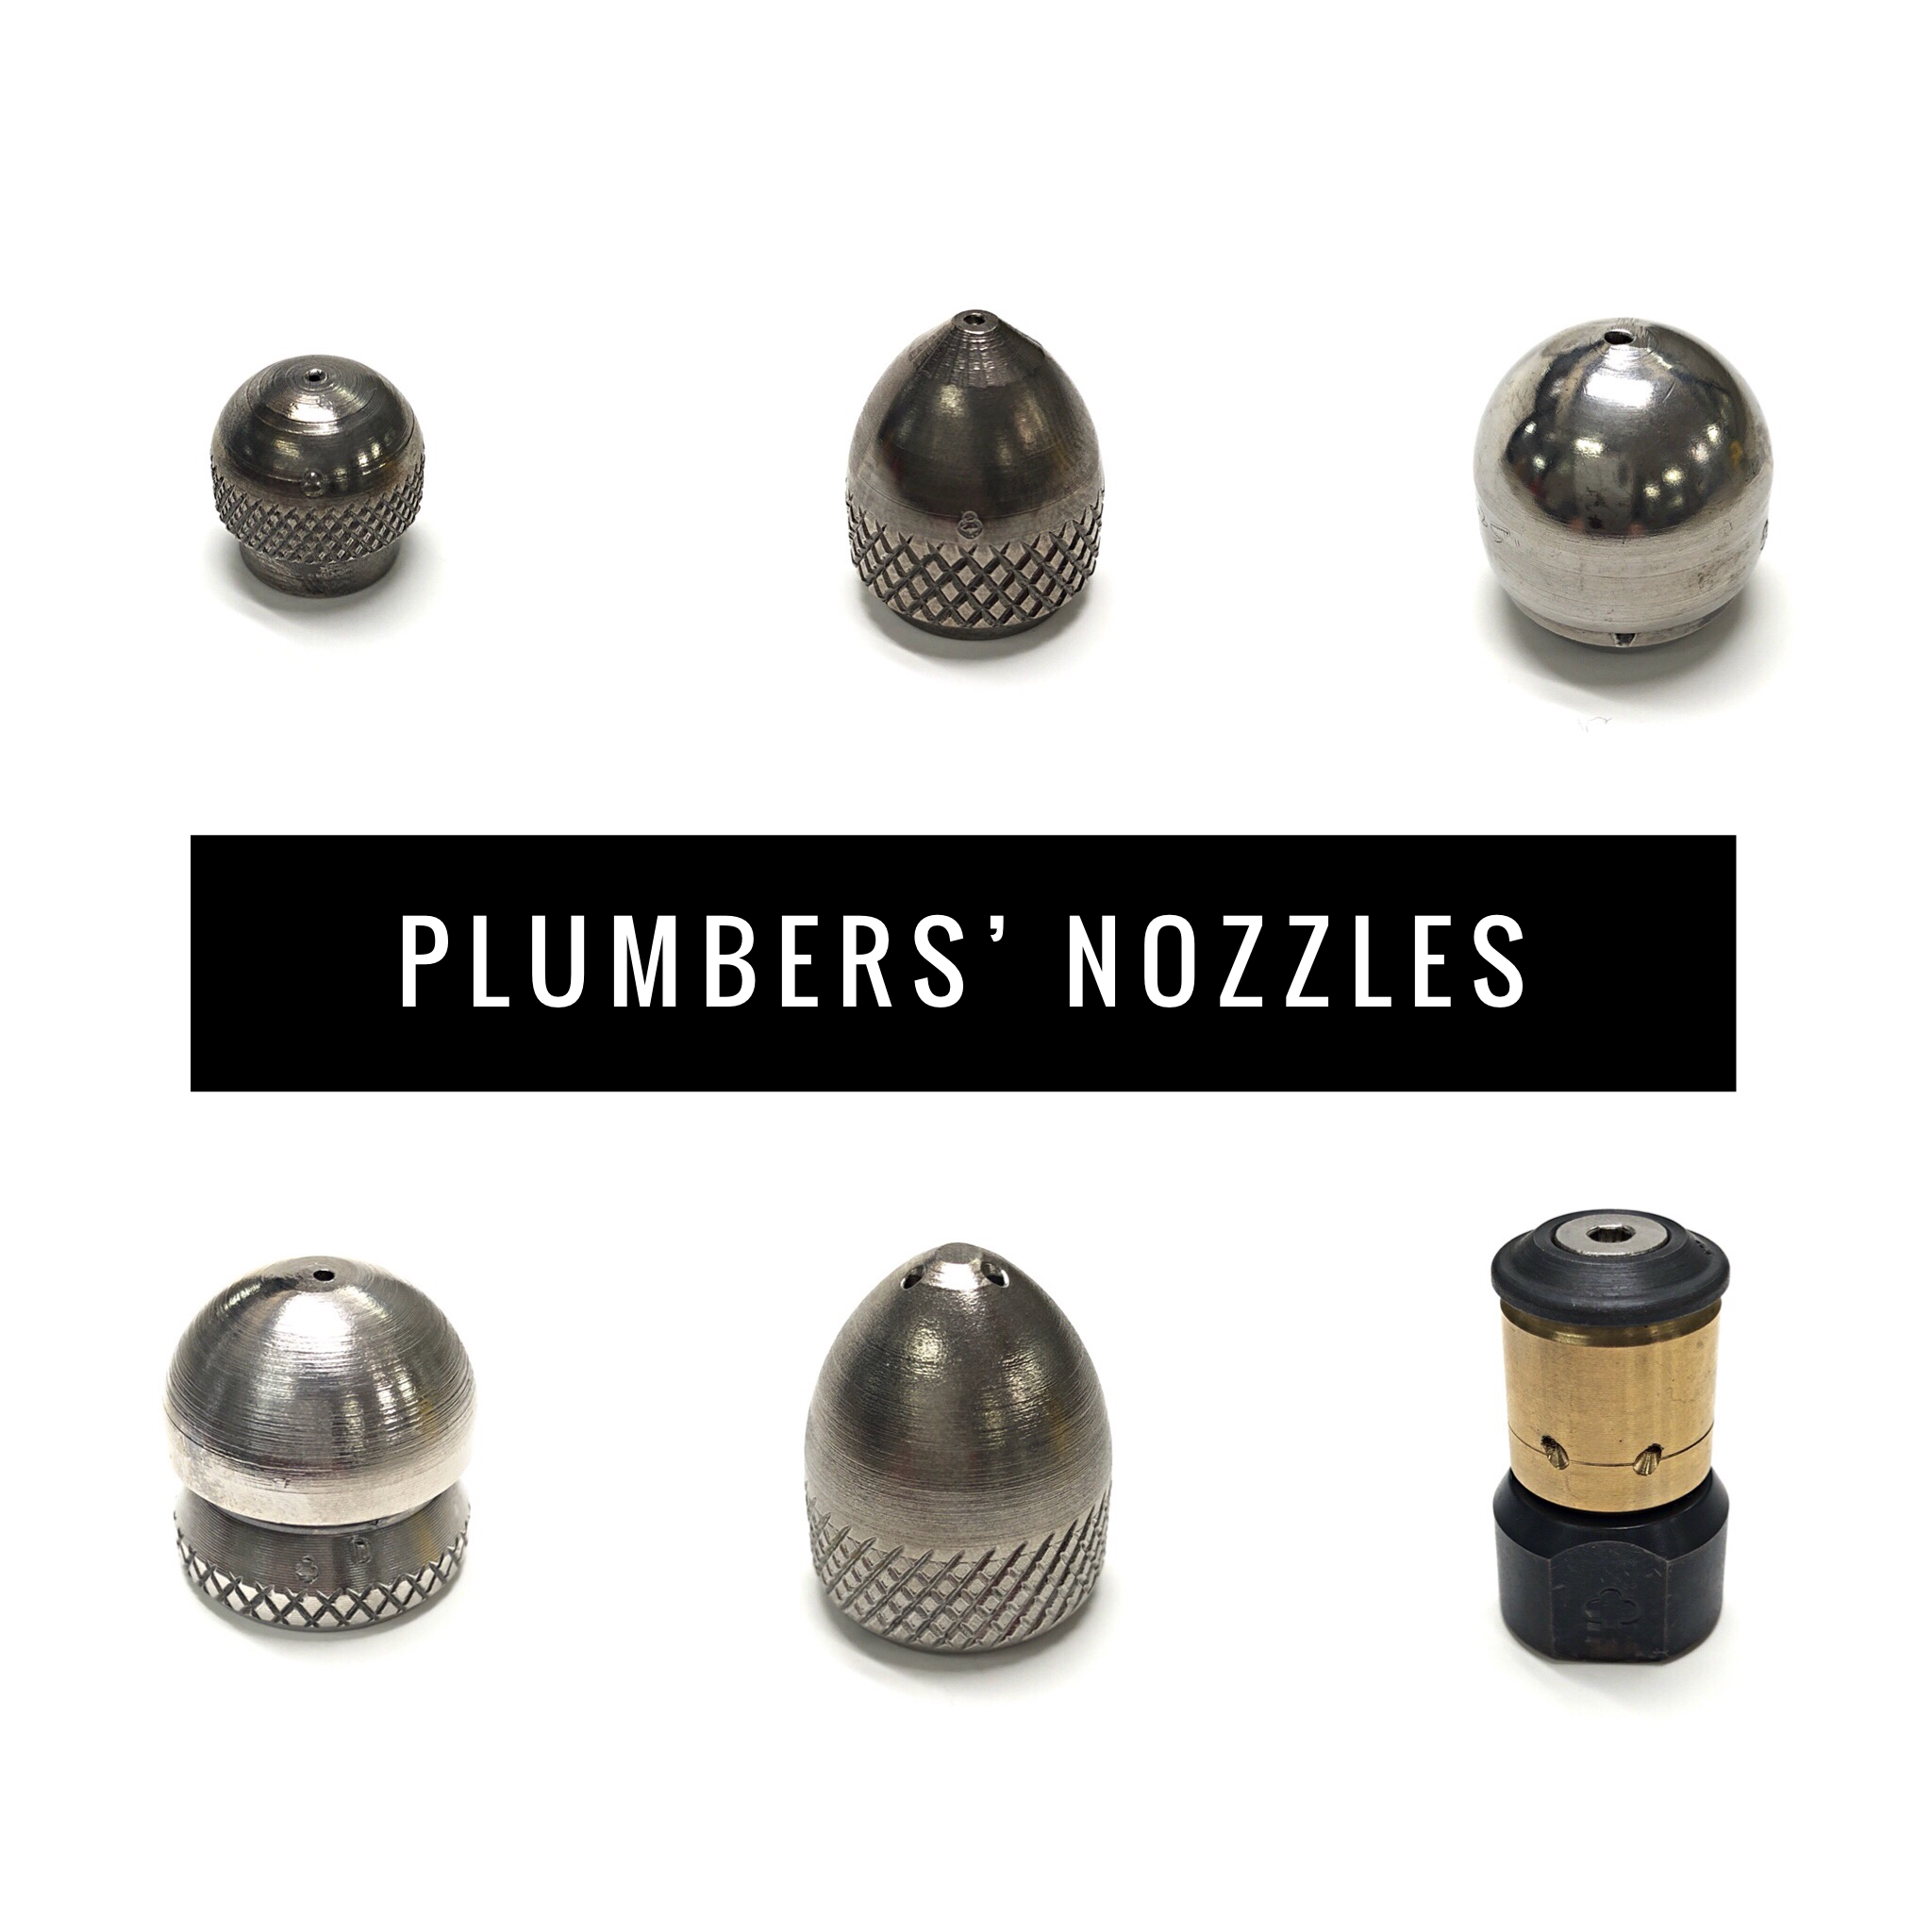 Plumbers' Nozzles